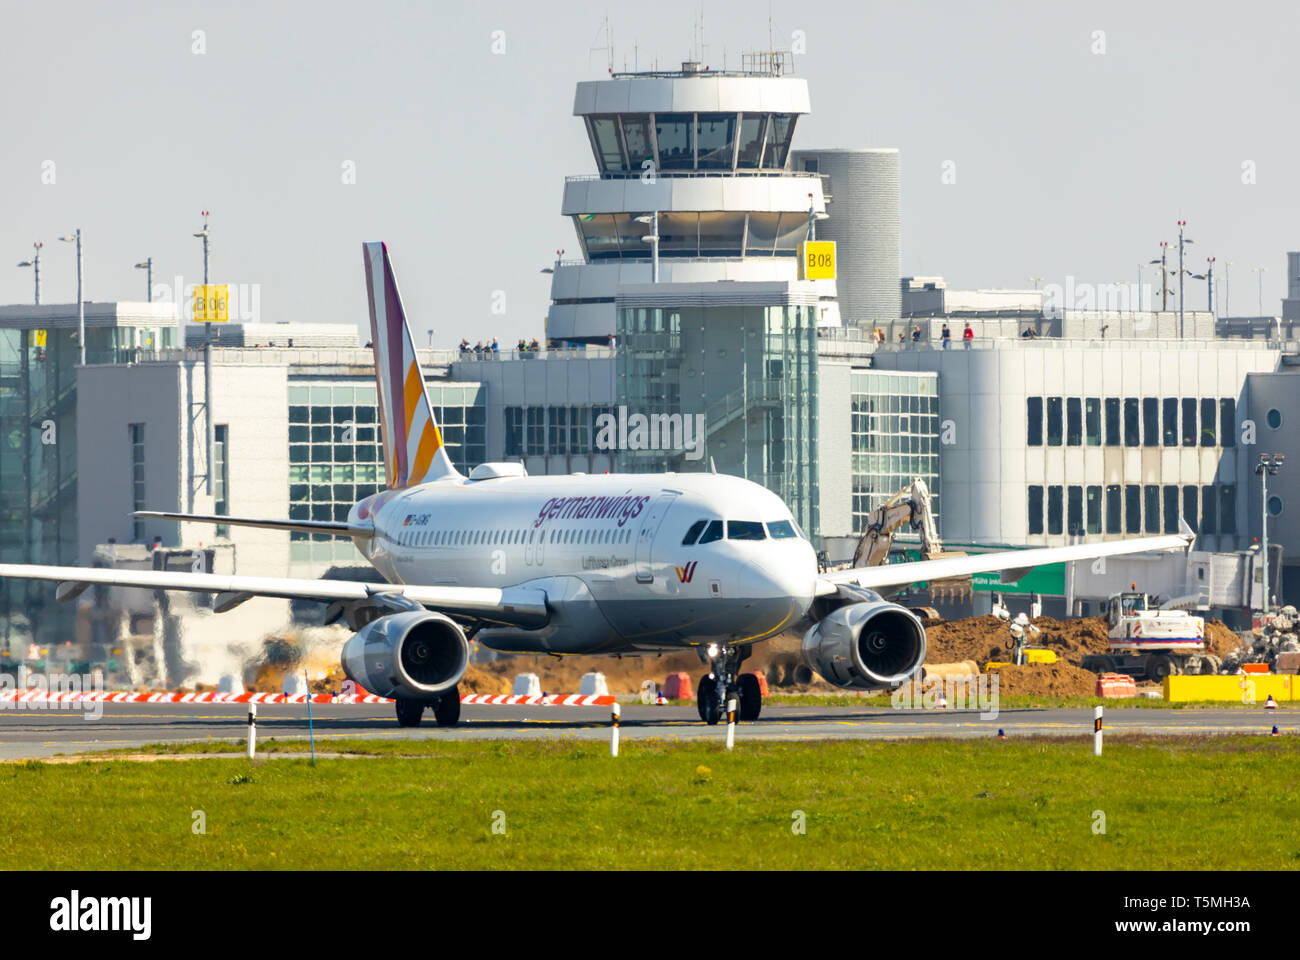 L'aeroporto internazionale di Düsseldorf, DUS, aeromobili Germanwings Airbus A319, sulla pista di rullaggio, del controllo del traffico aereo tower, edificio terminal, Foto Stock